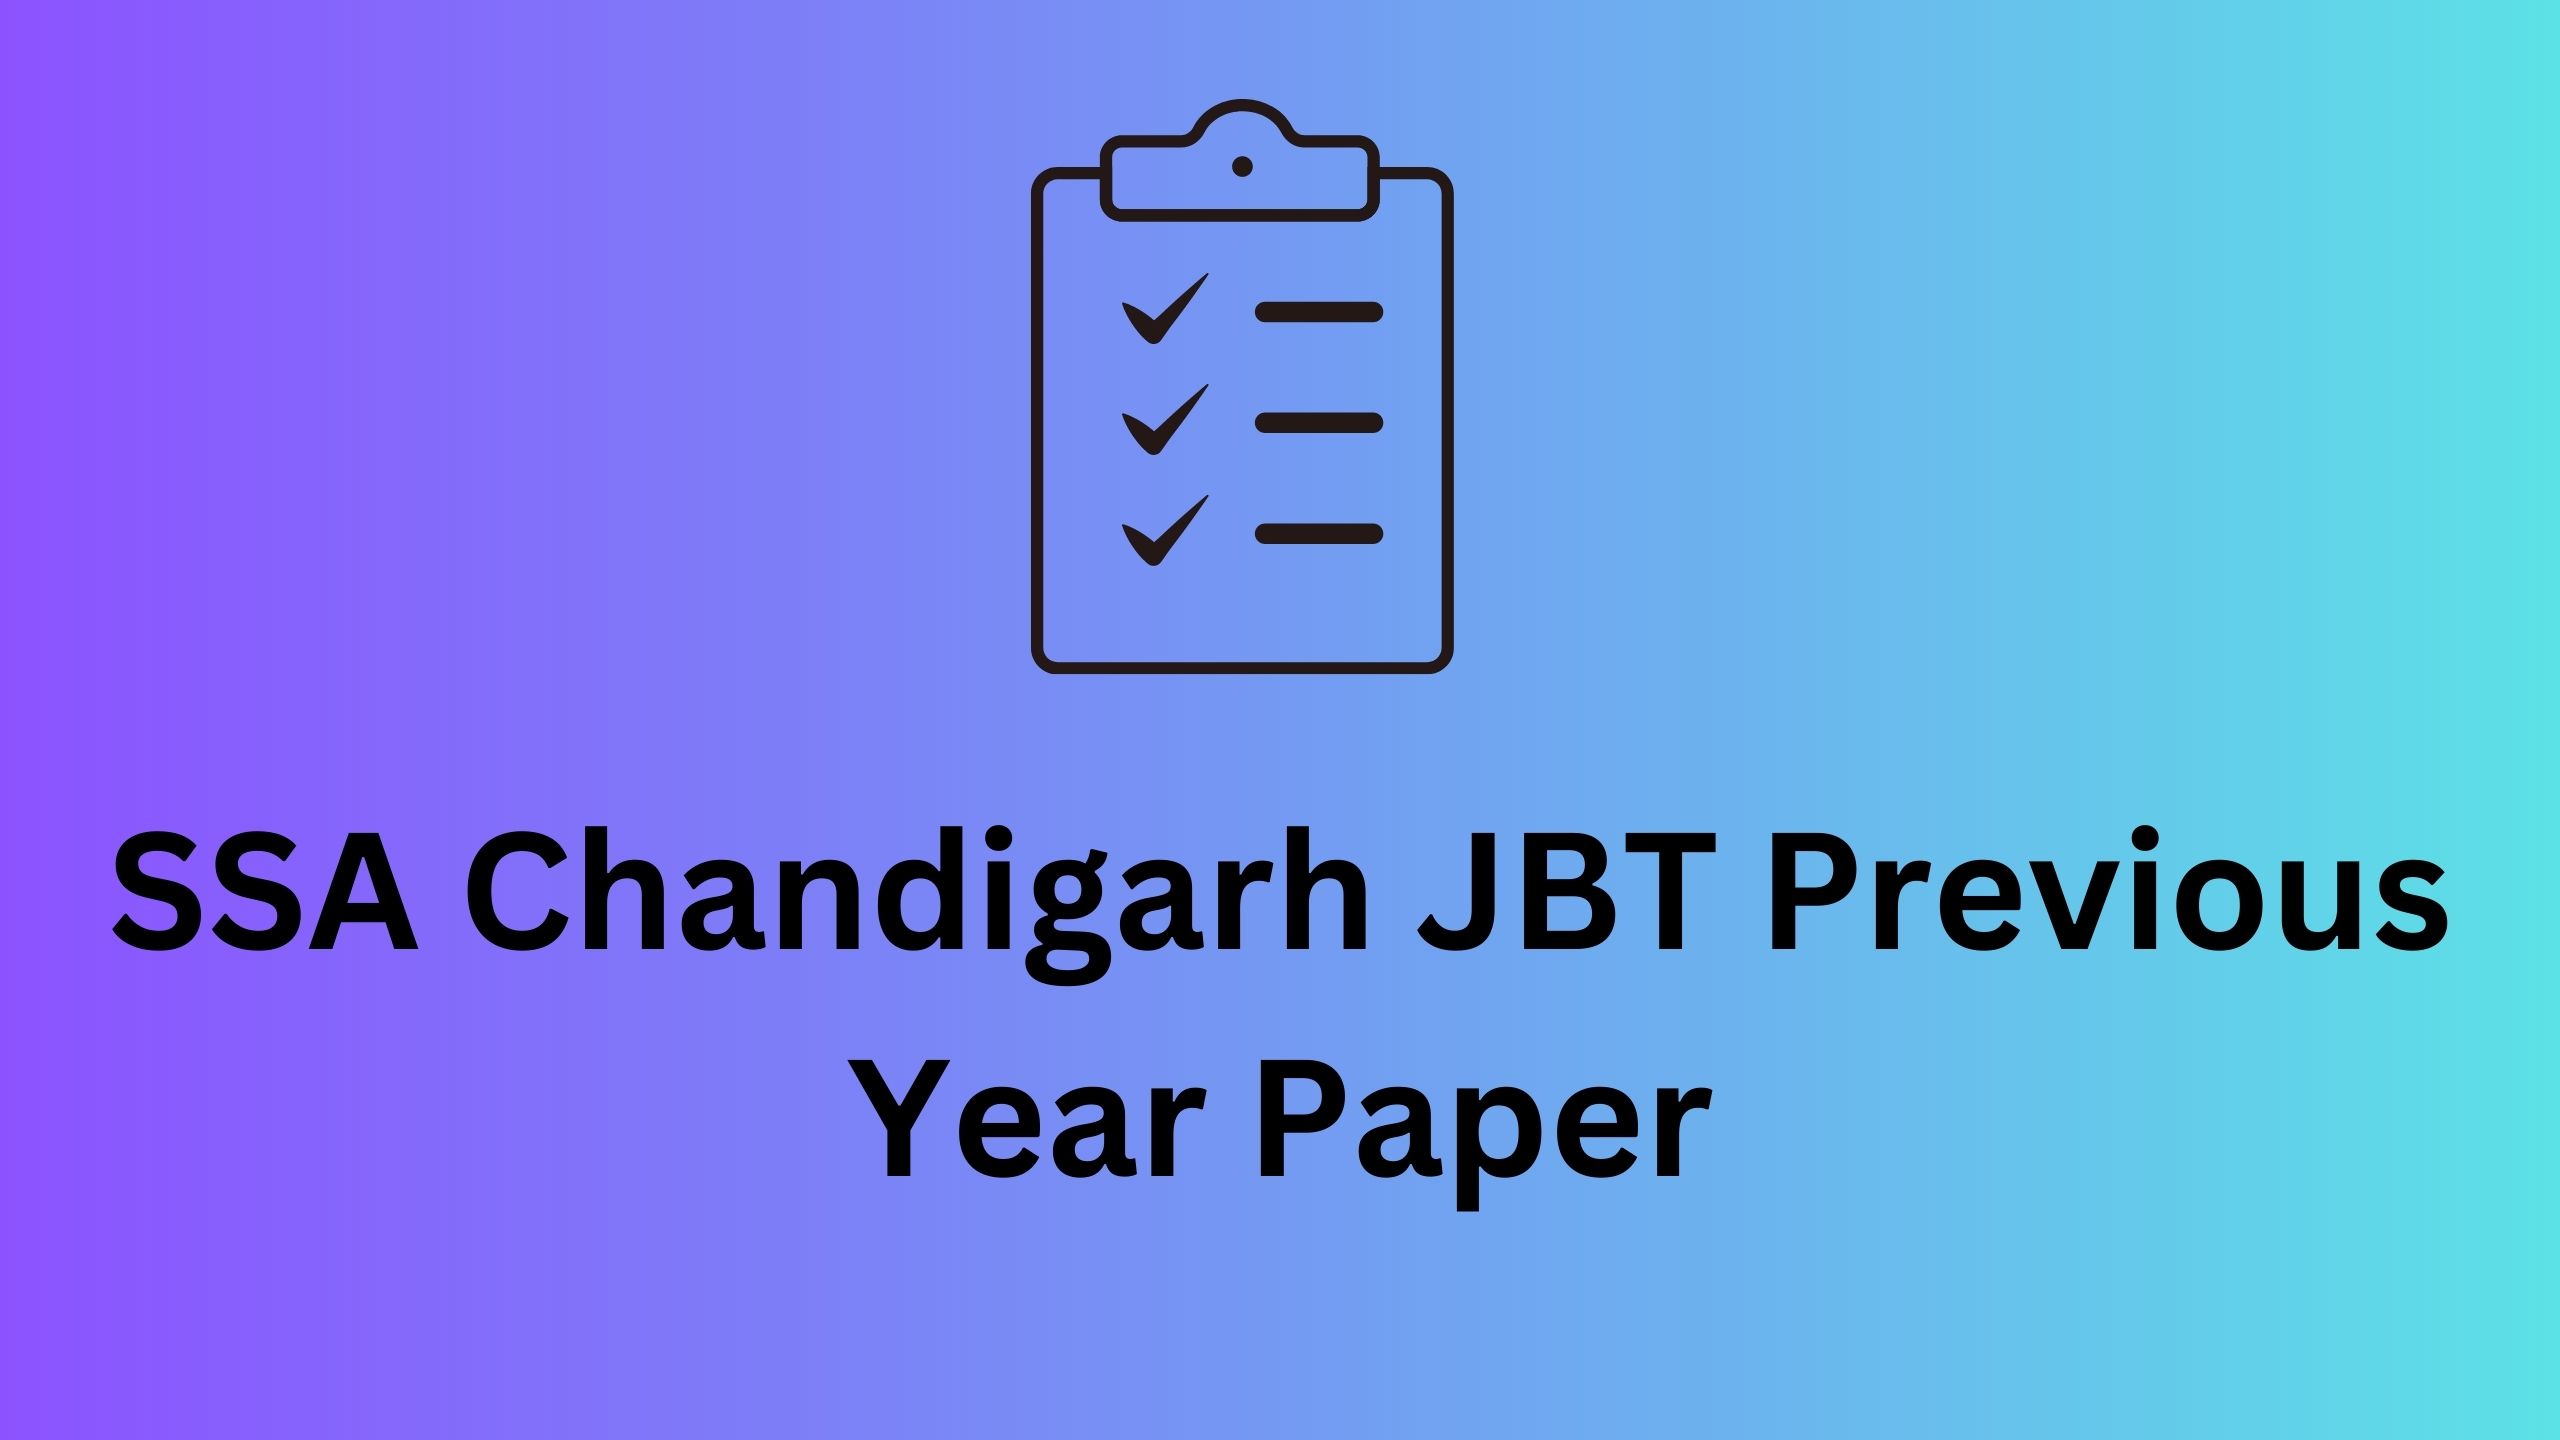 SSA Chandigarh JBT Previous Year Paper